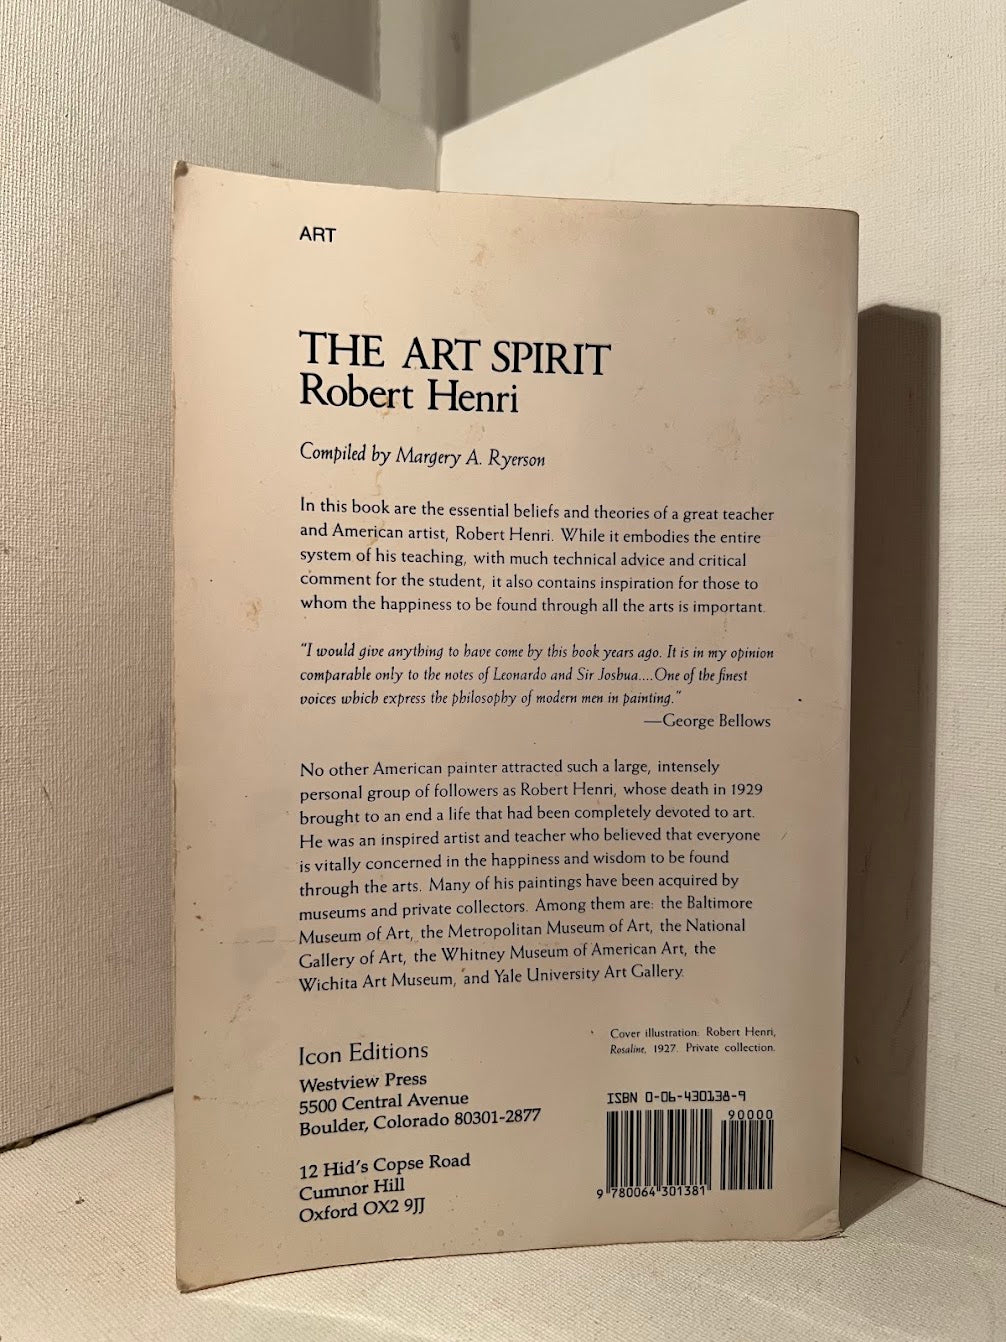 The Art Spirit by Robert Henri